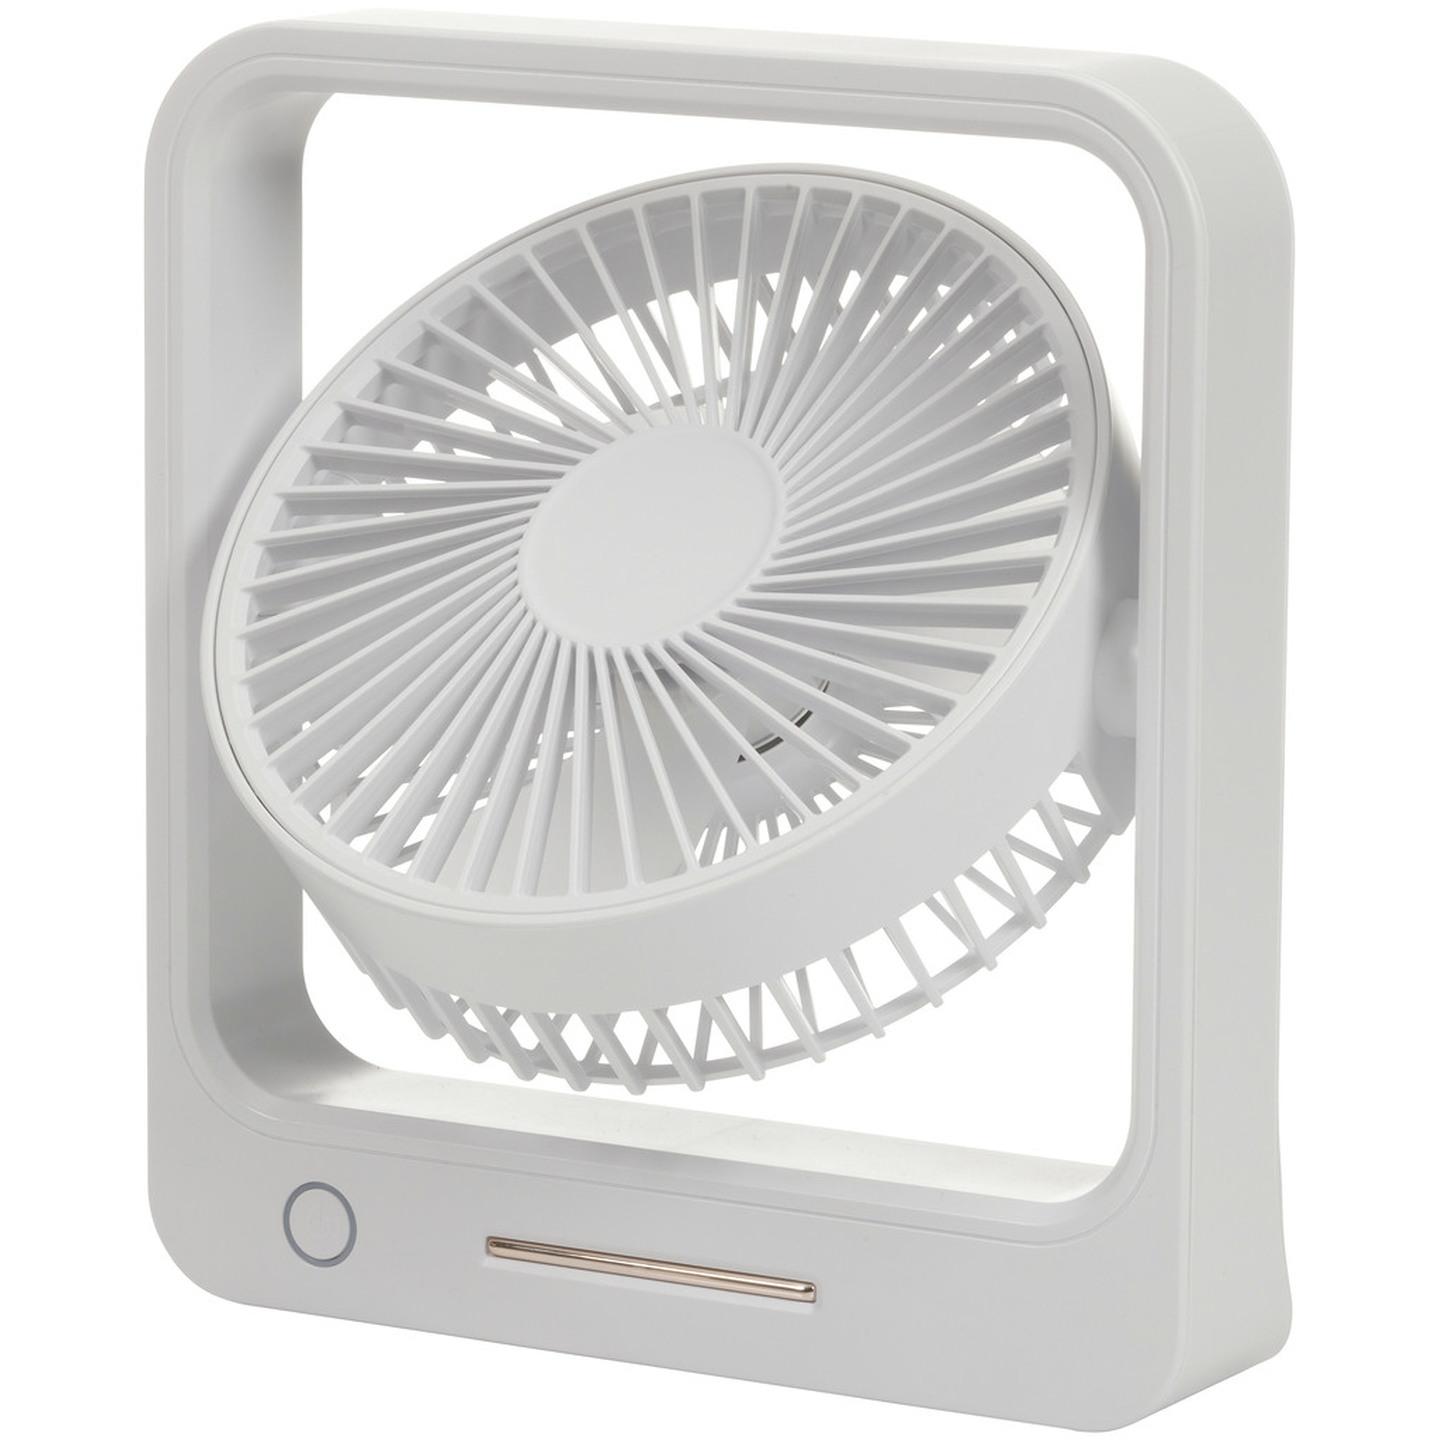 6 Rechargeable Desktop Fan